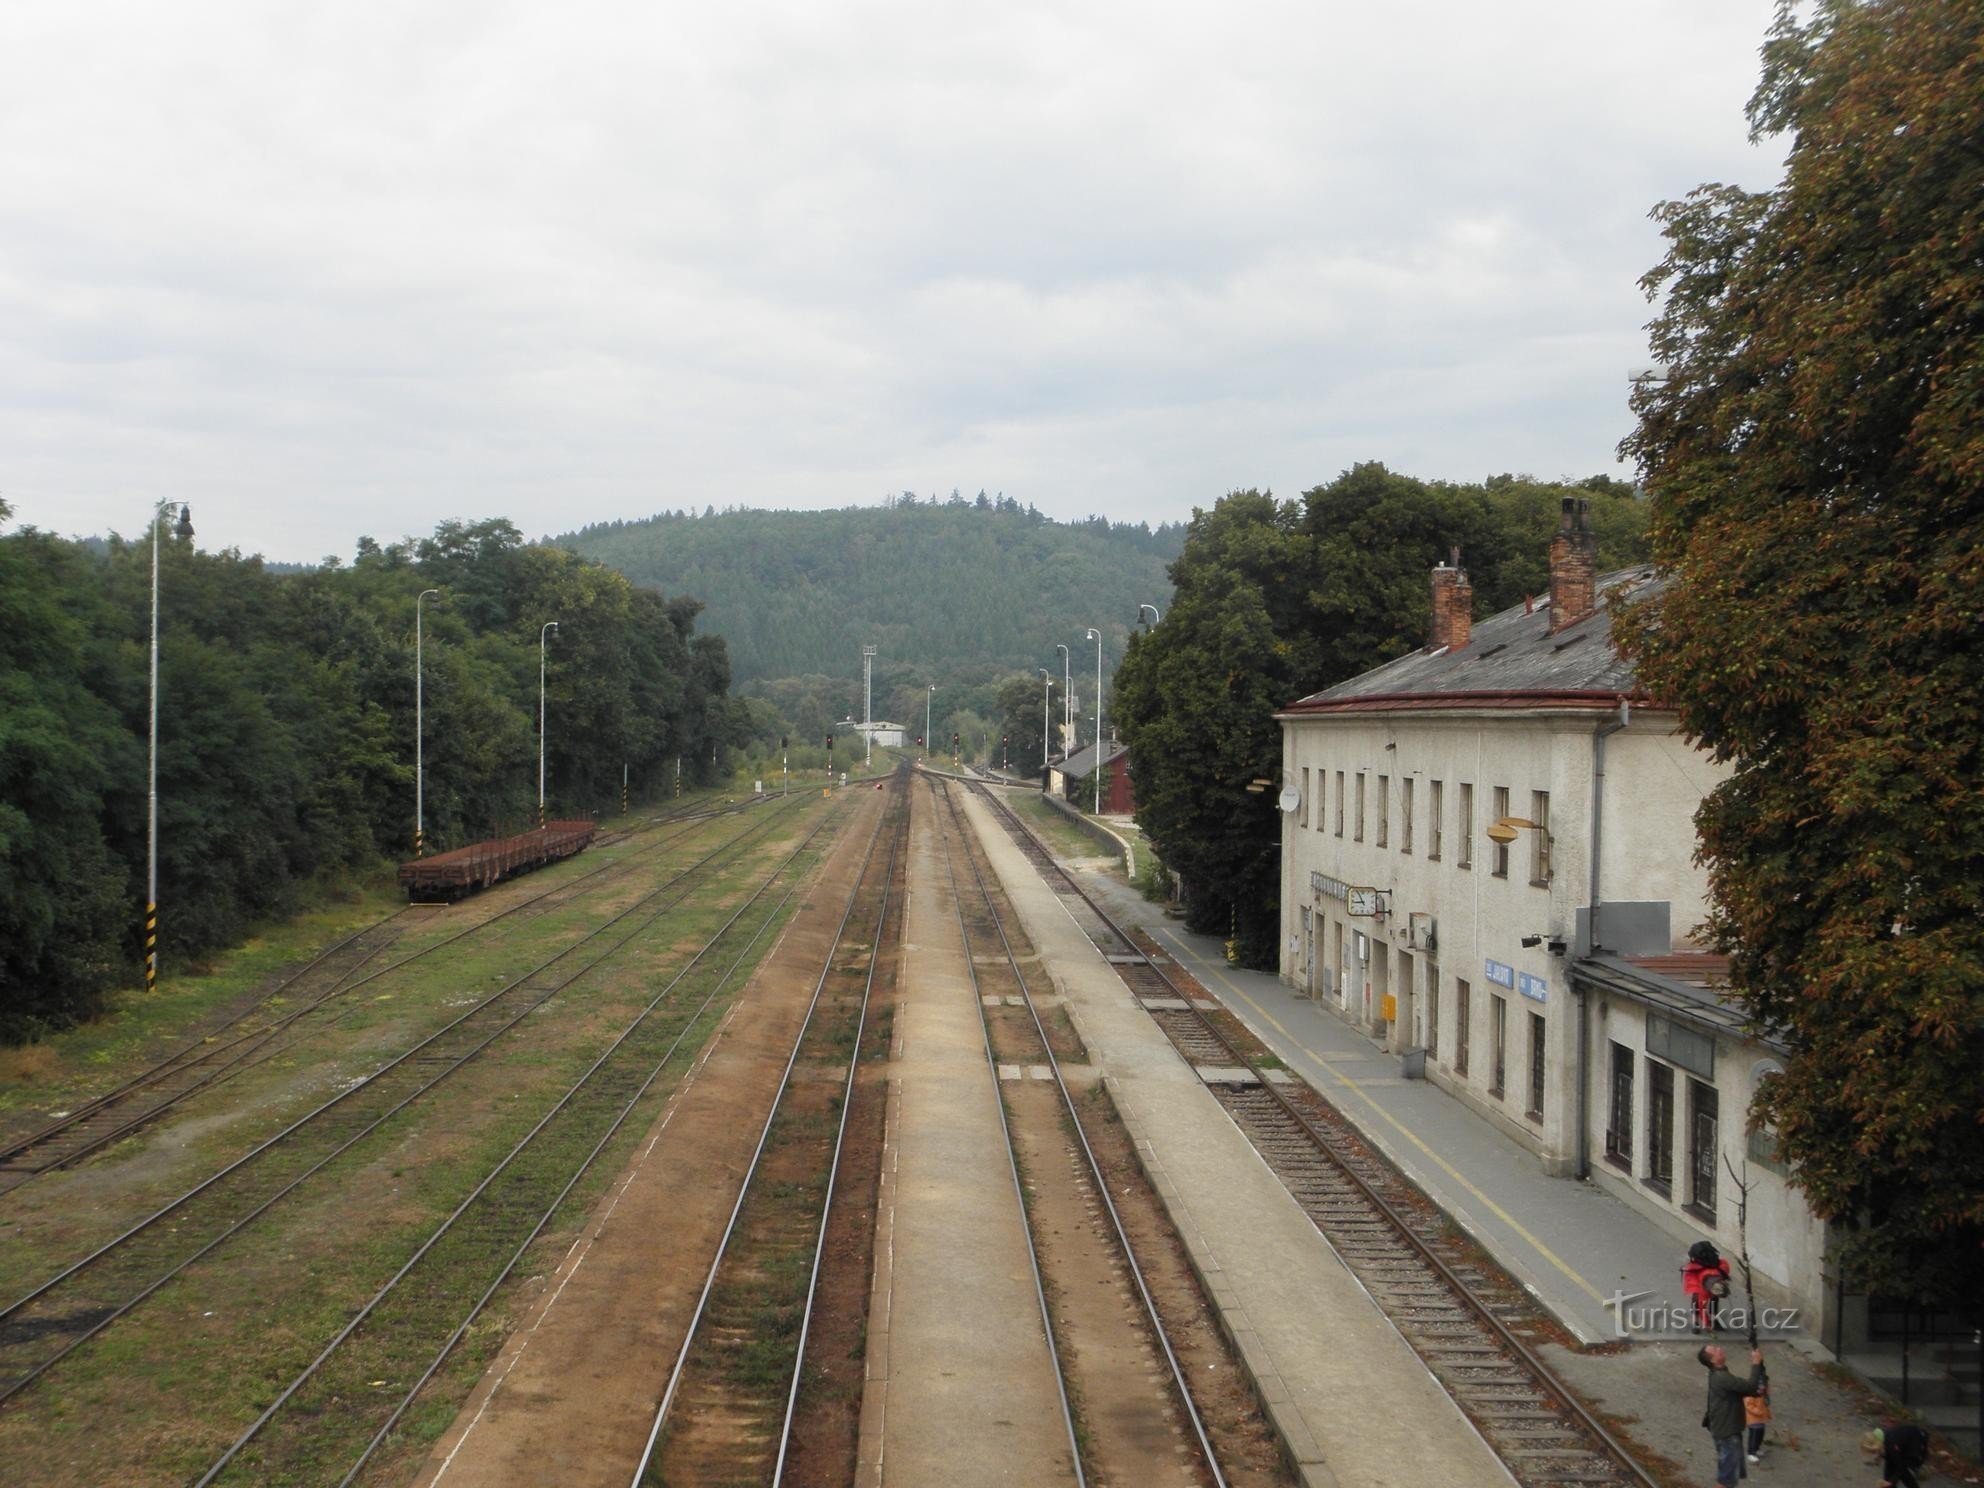 Gare près de Brno - 17.9.2011